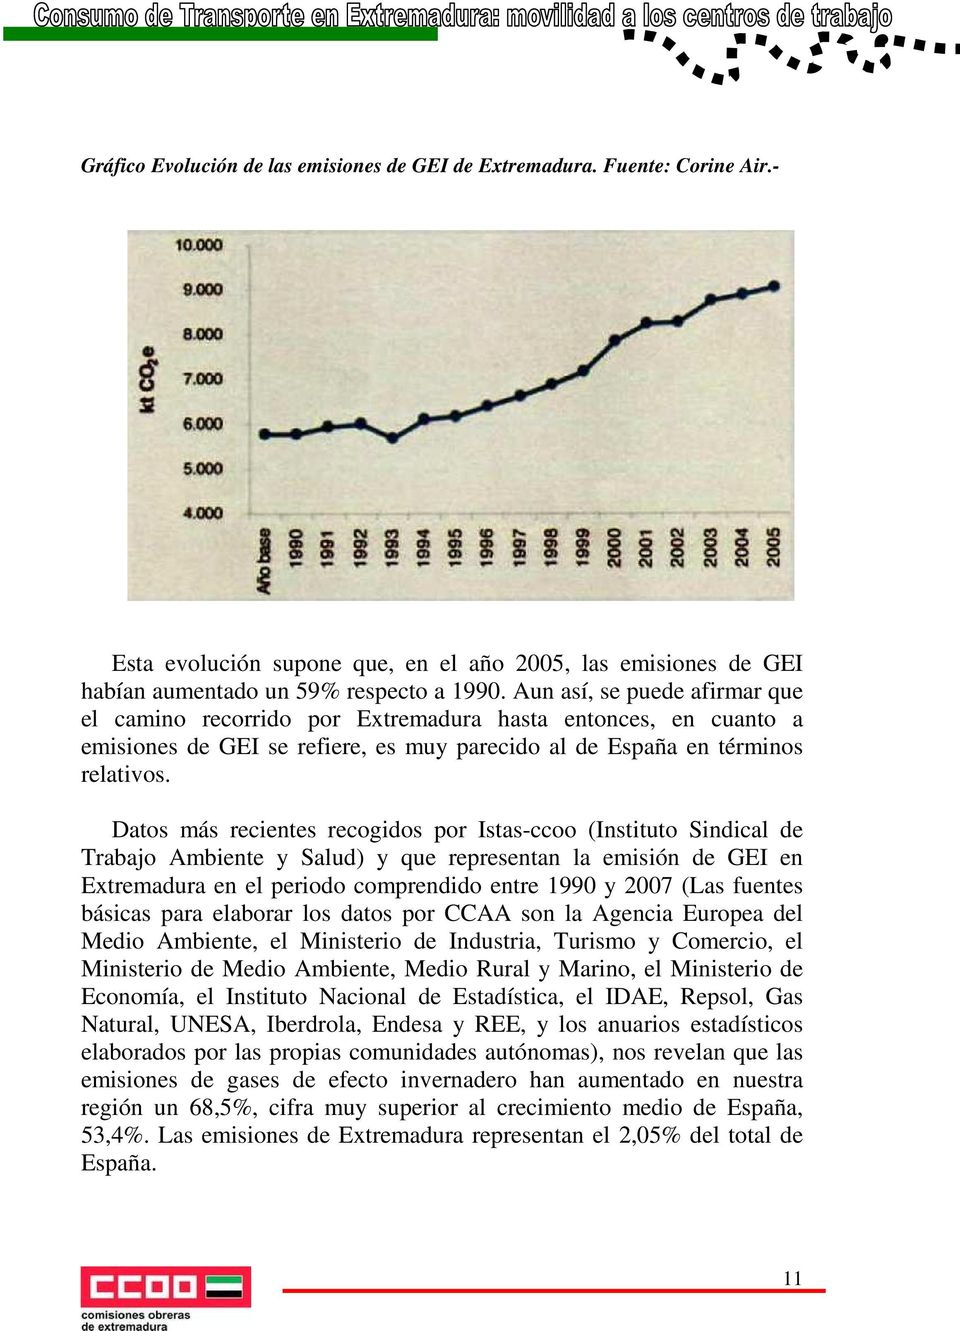 Datos más recientes recogidos por Istas-ccoo (Instituto Sindical de Trabajo Ambiente y Salud) y que representan la emisión de GEI en Extremadura en el periodo comprendido entre 1990 y 2007 (Las